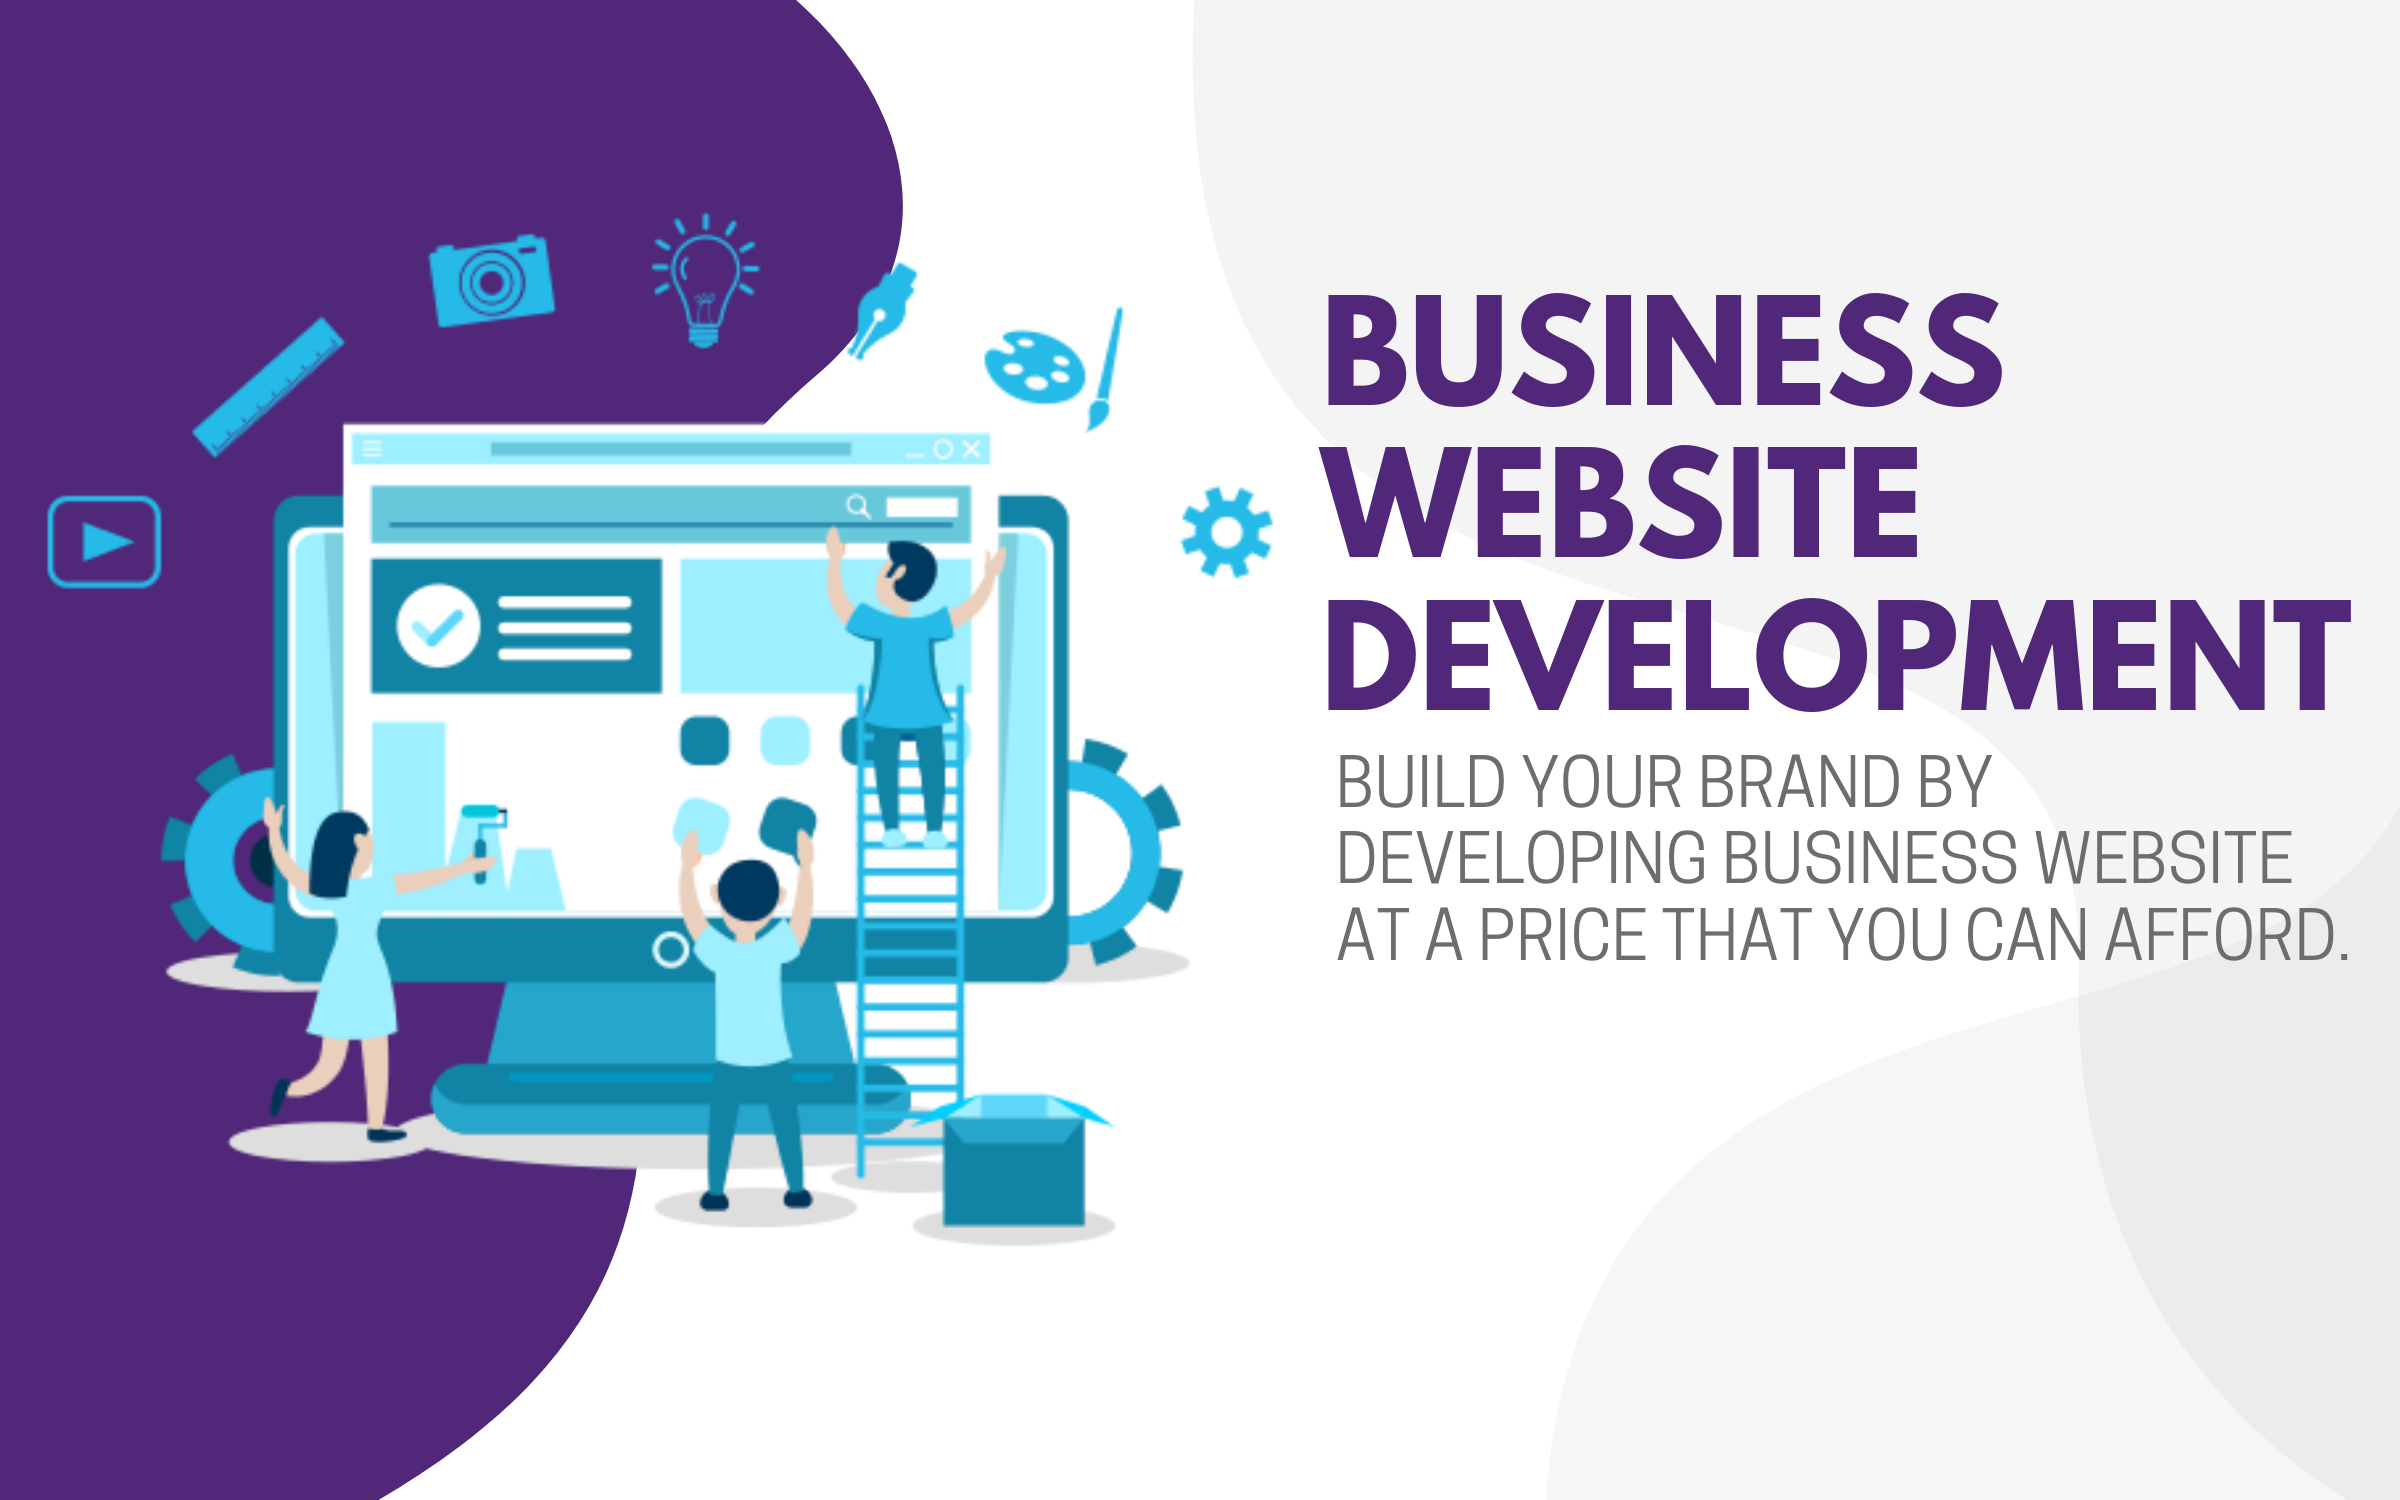 Business website development technoinc